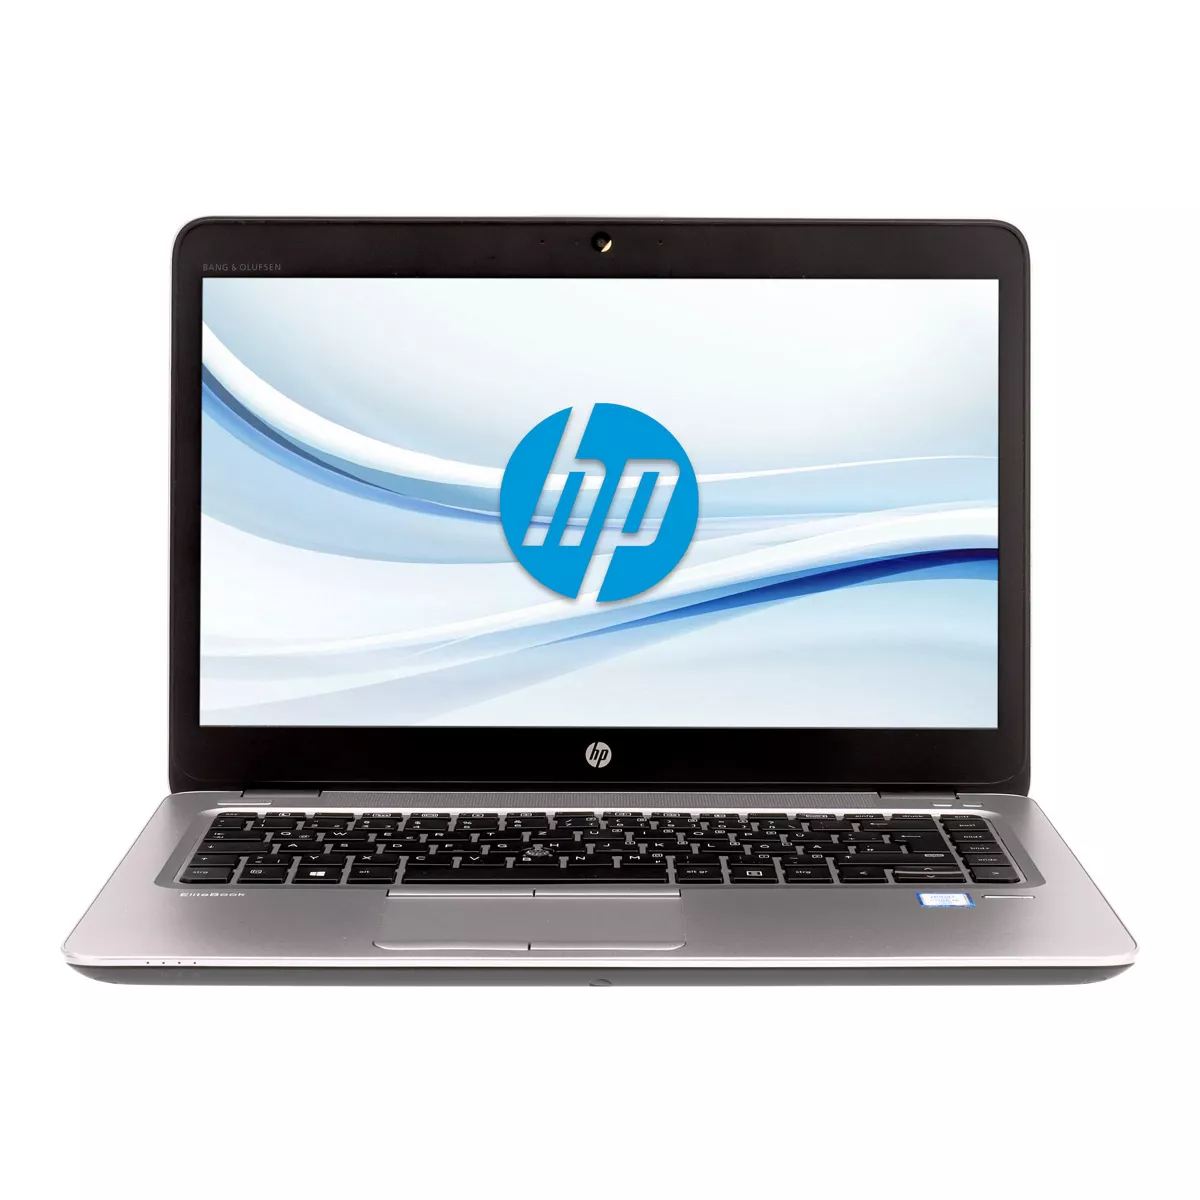 HP EliteBook 840 G4 Core i5 7200U Full-HD 240 GB M.2 Webcam A